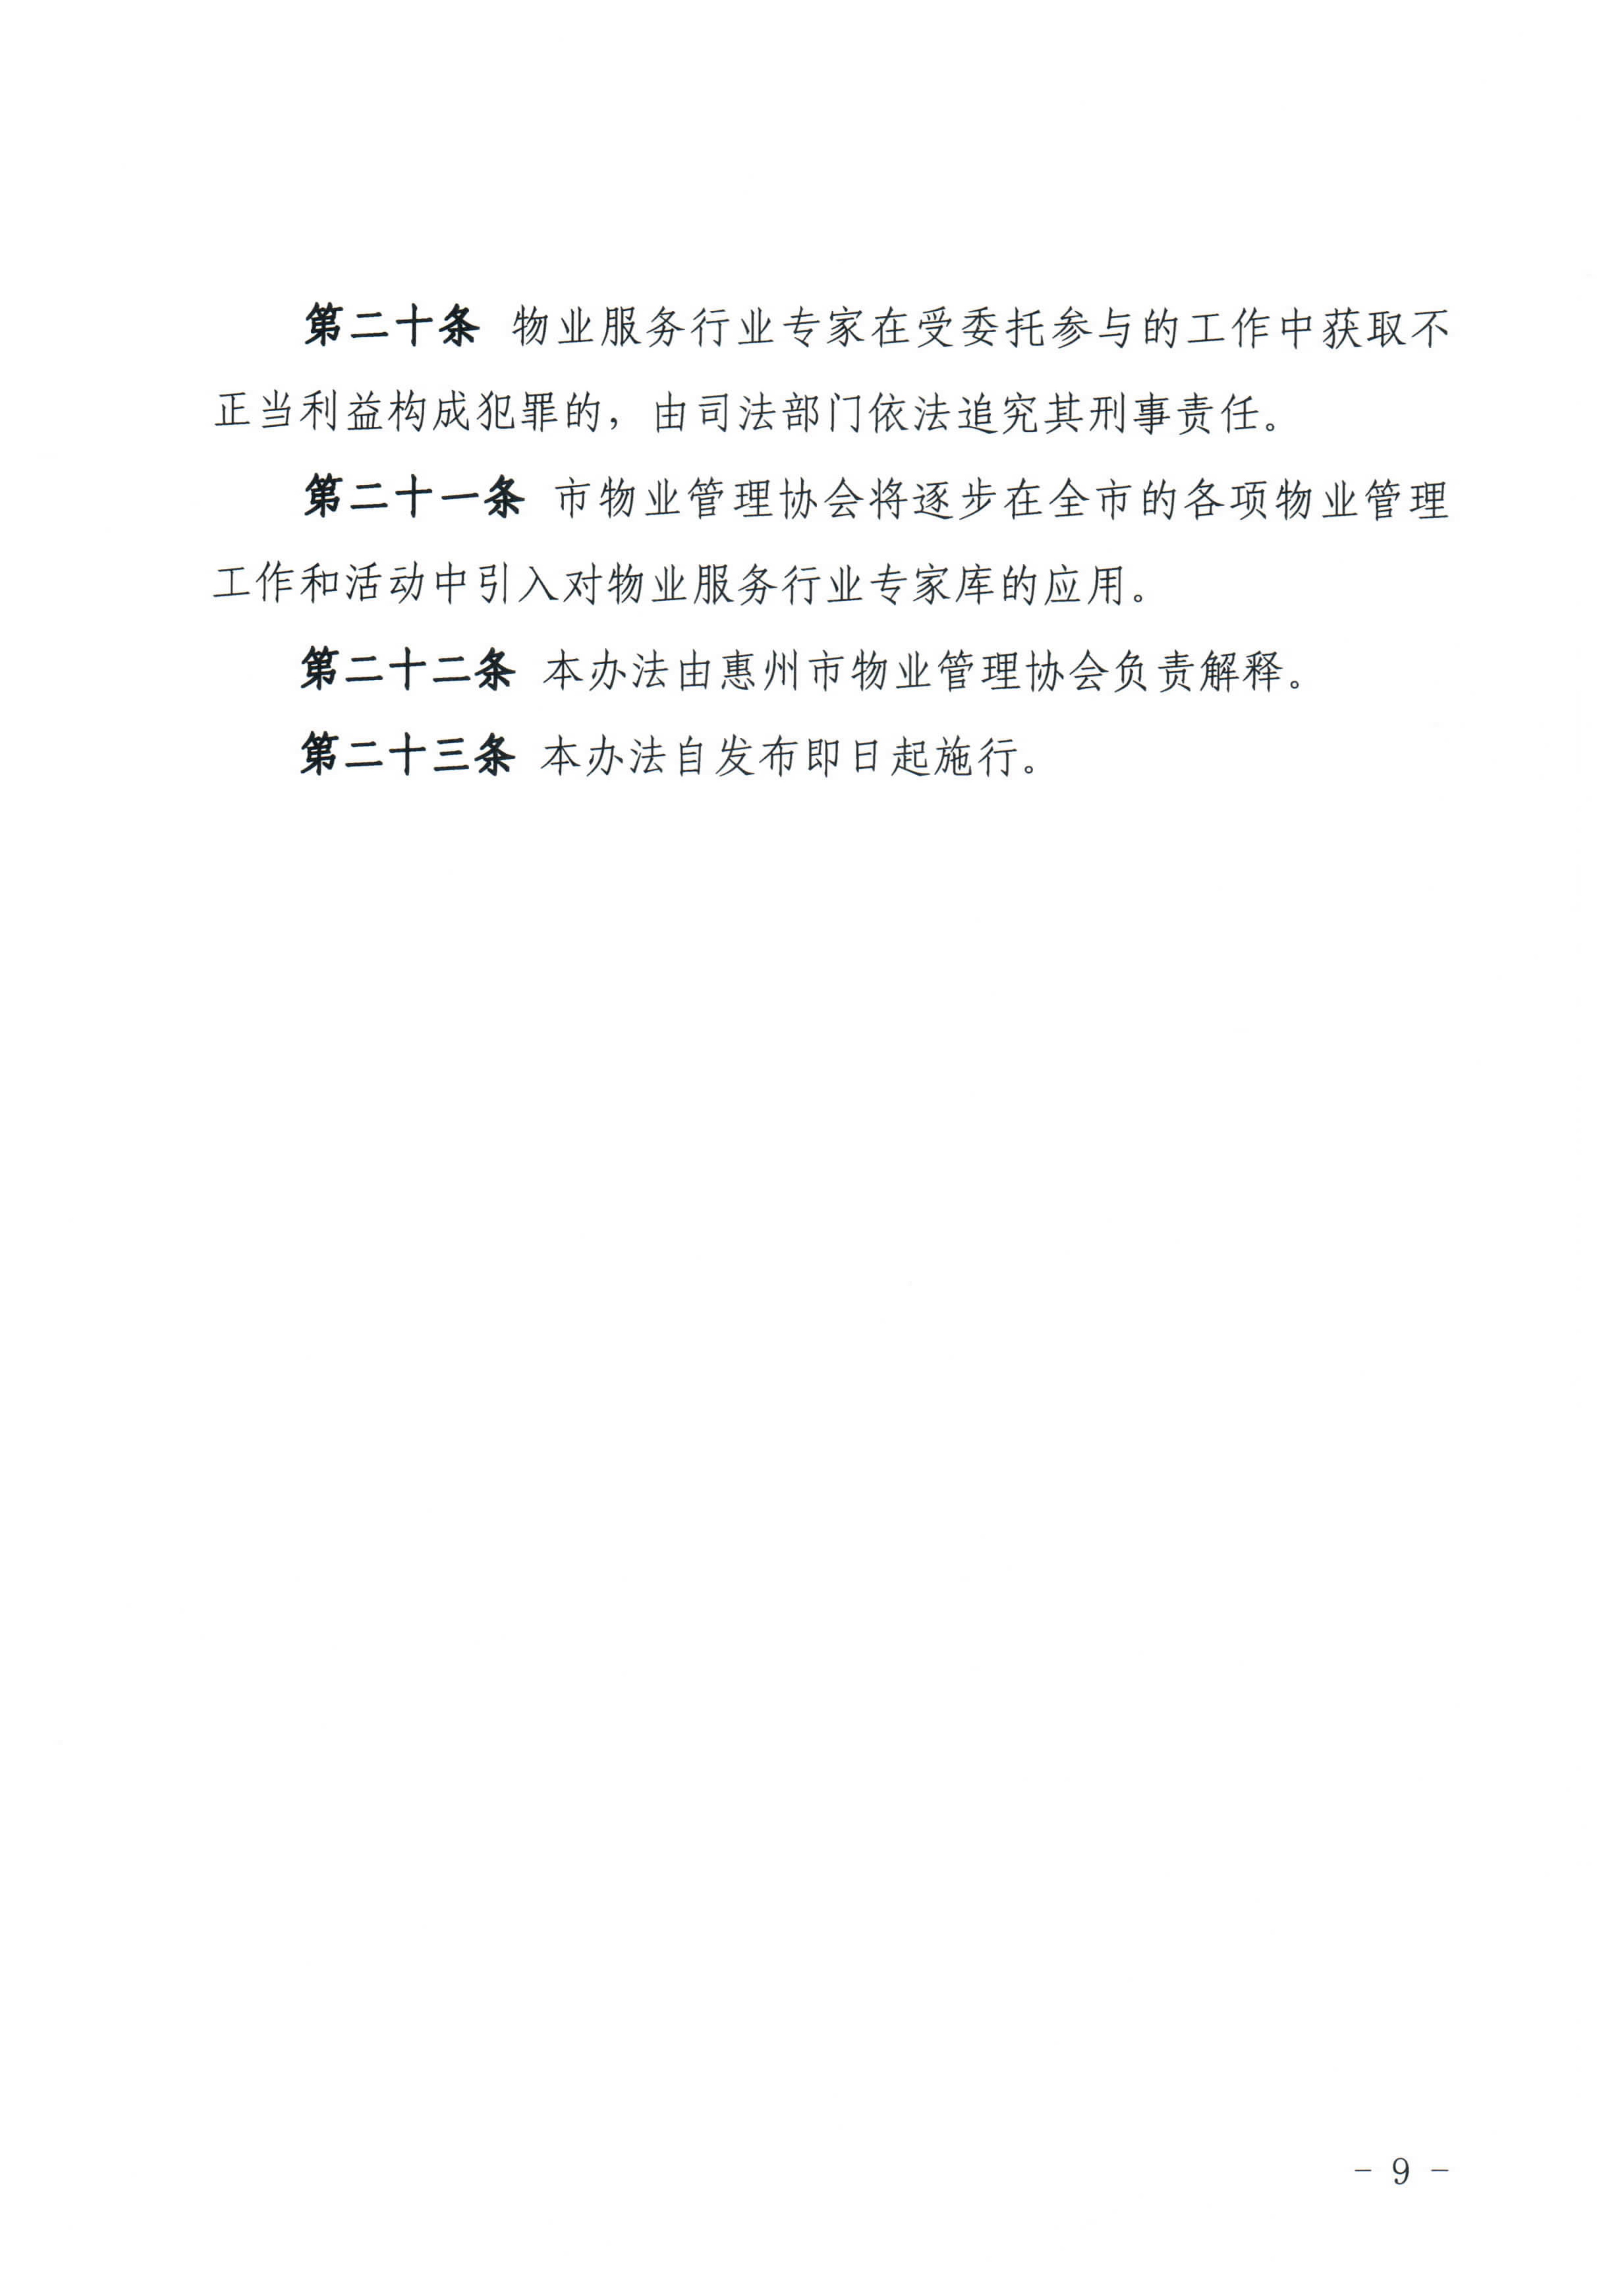 关于印发《惠州市物业管理协会物业服务行业专家库管理办法》的通知_9.jpg